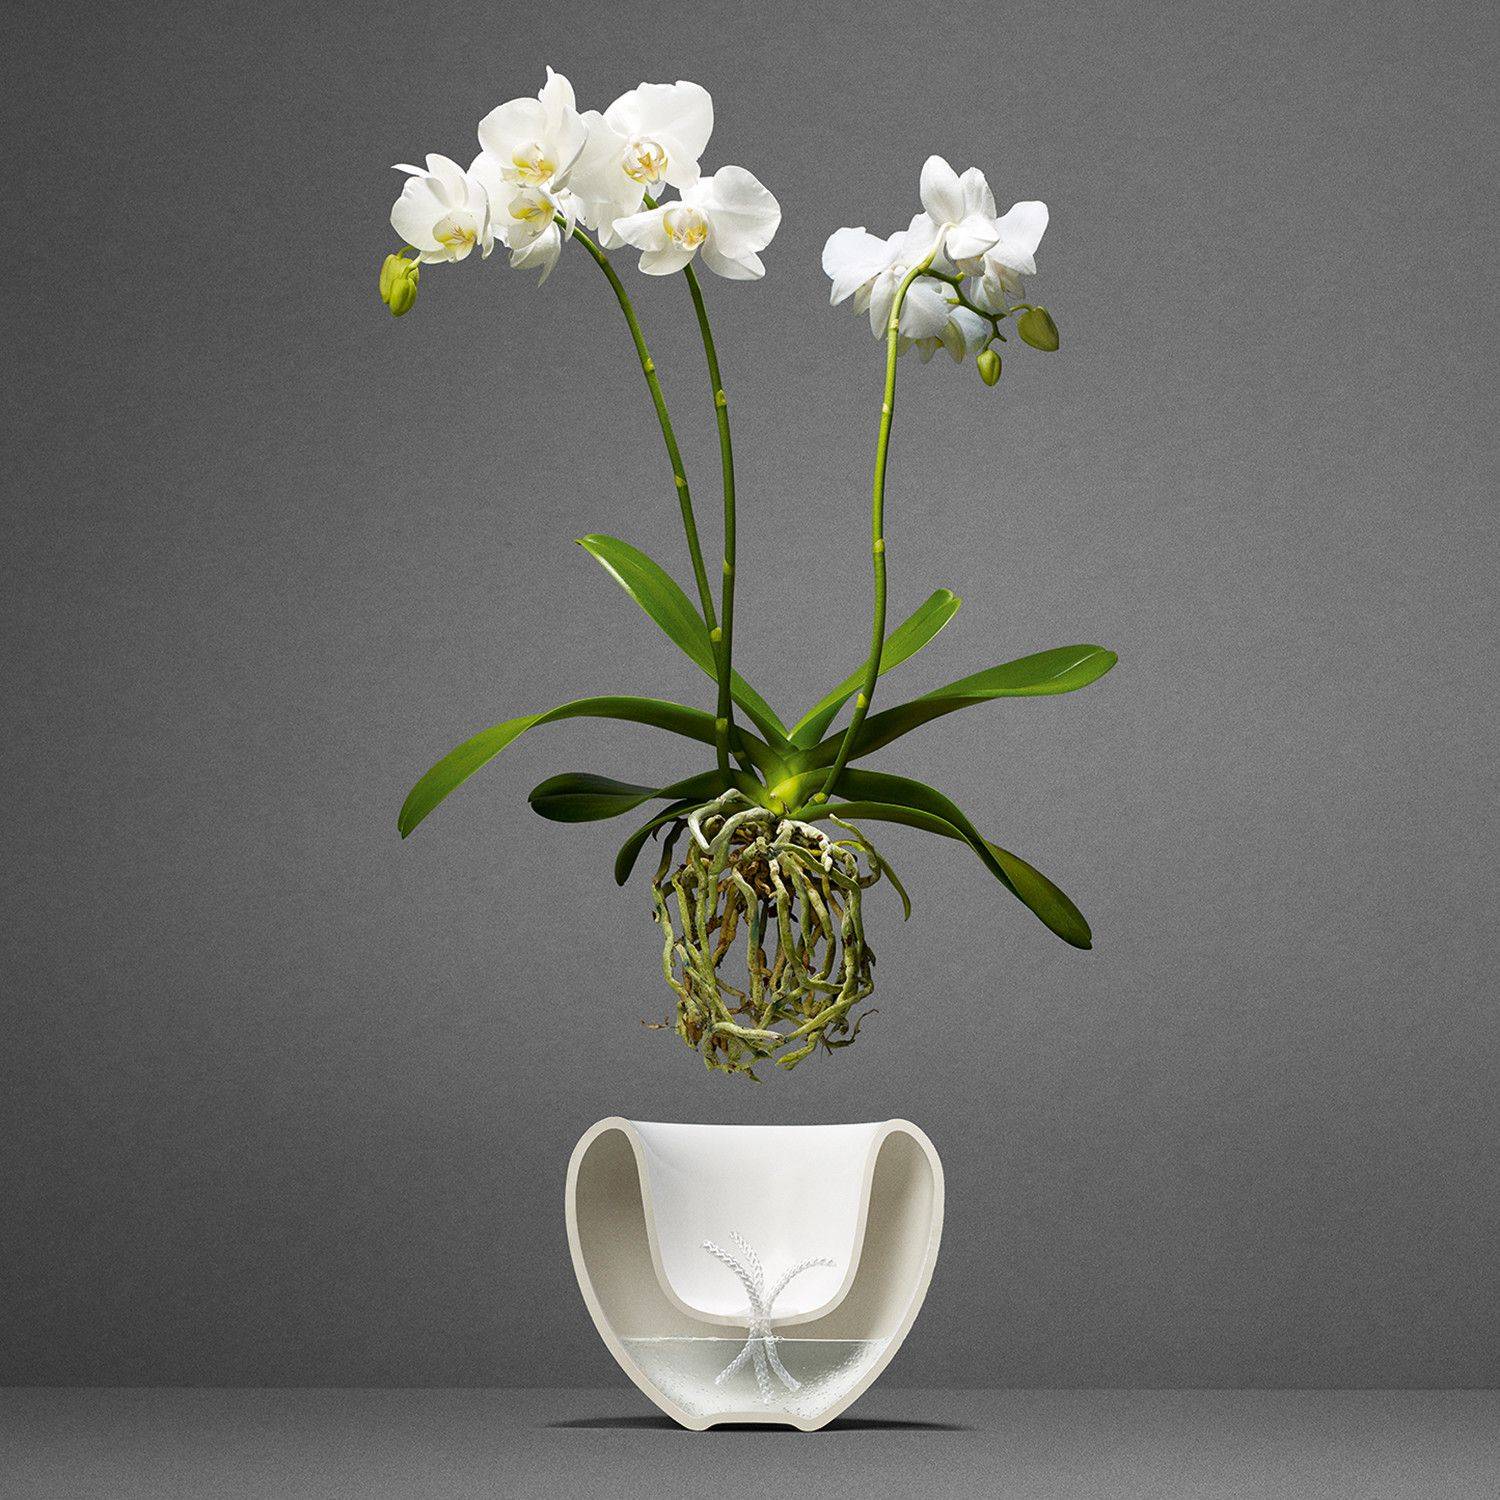 Выращивание орхидей в стеклянных горшках (вазах) без земли (грунта): как ухаживать за прозрачным вазоном и фото емкостей